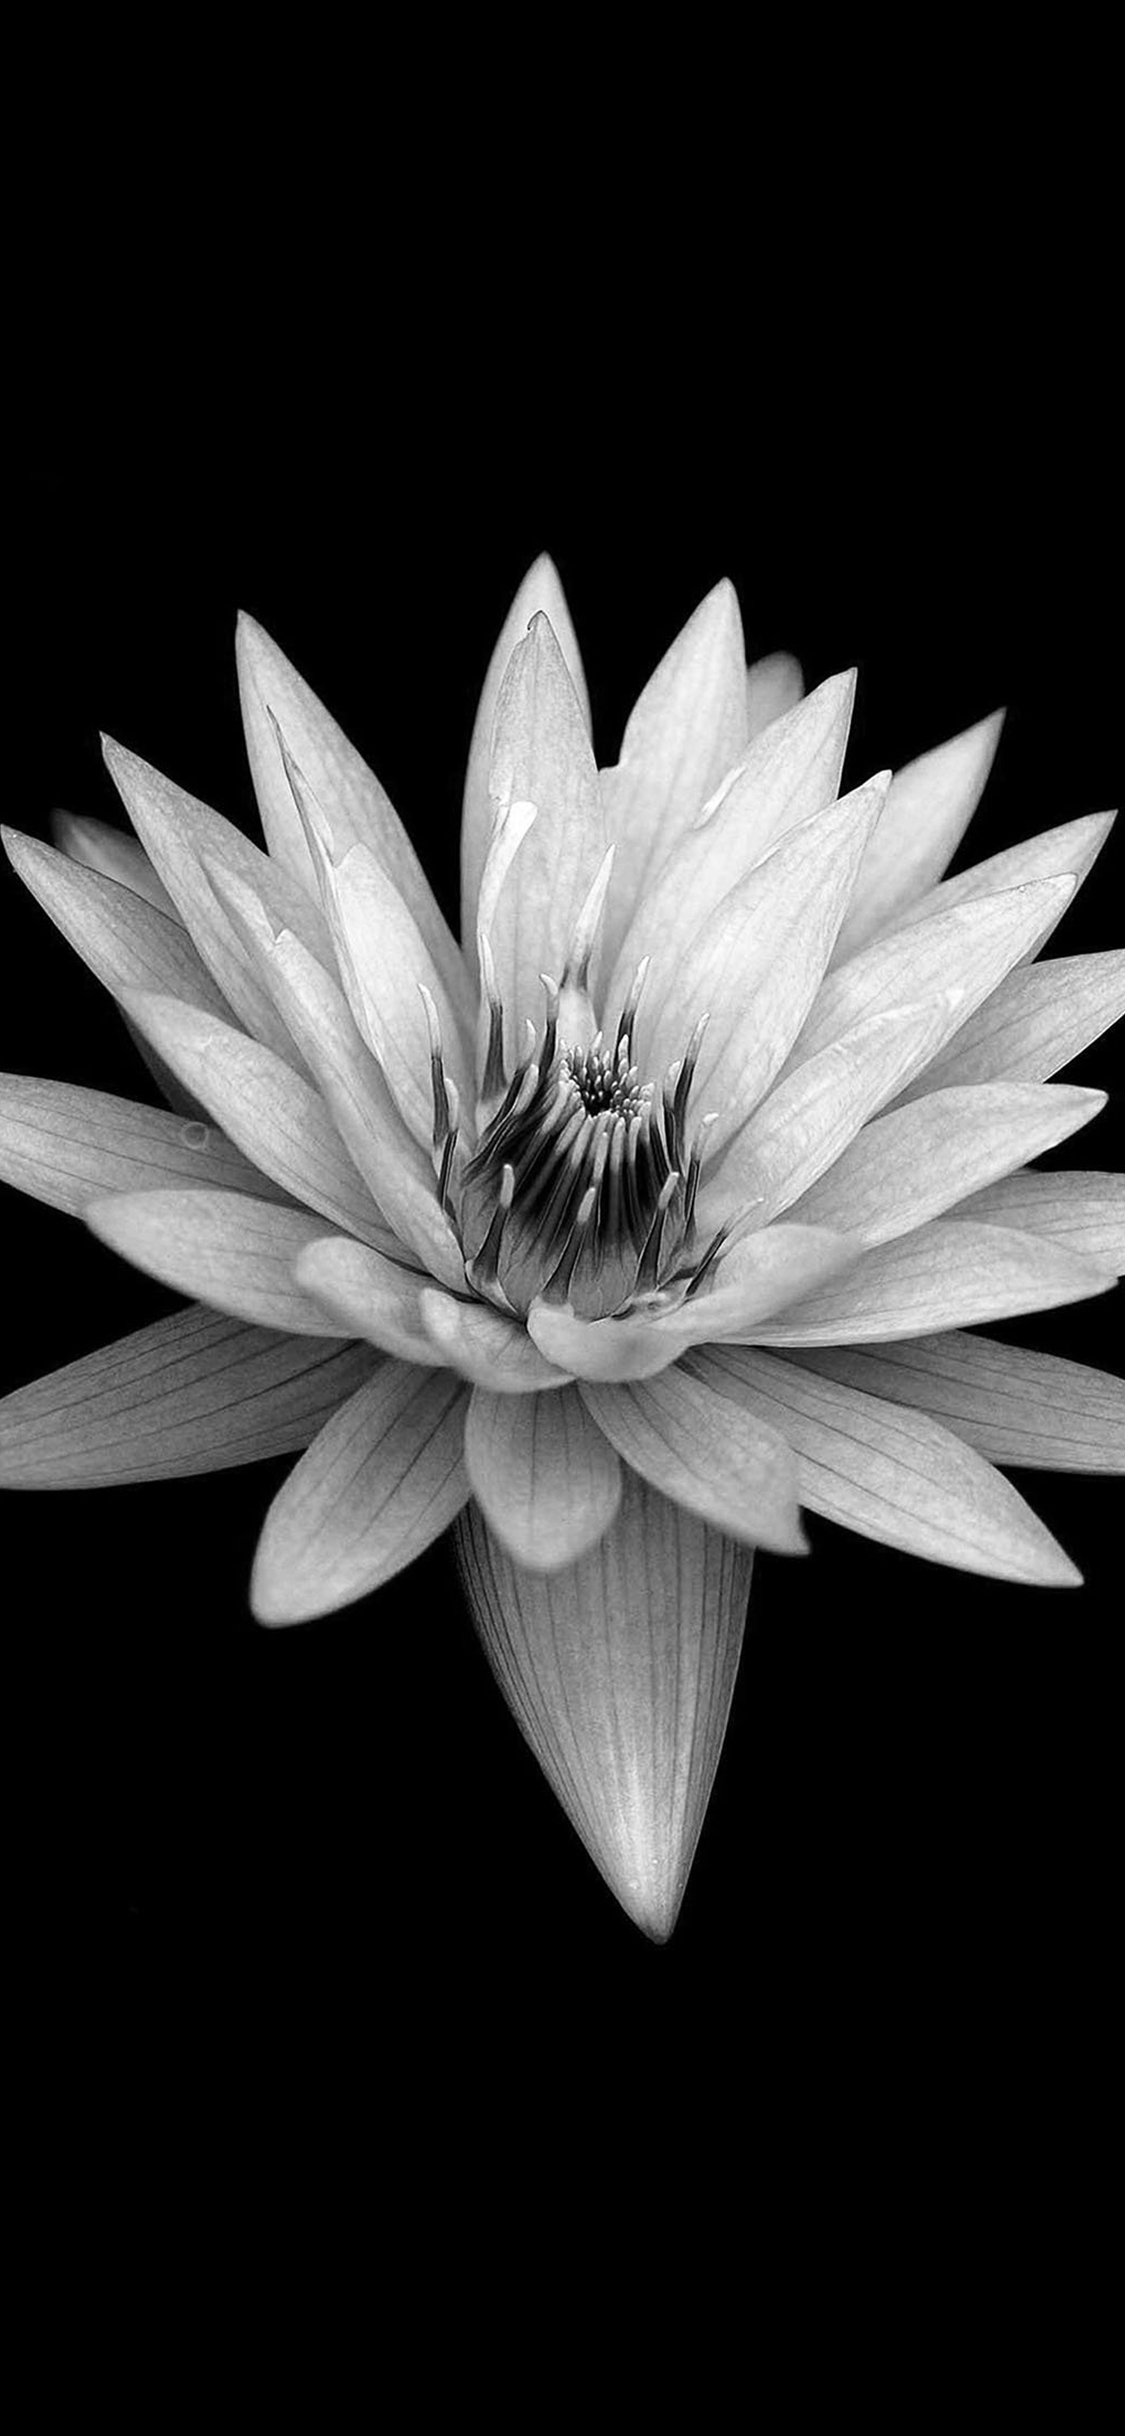 Dark Flower Black Background iPhone wallpaper 